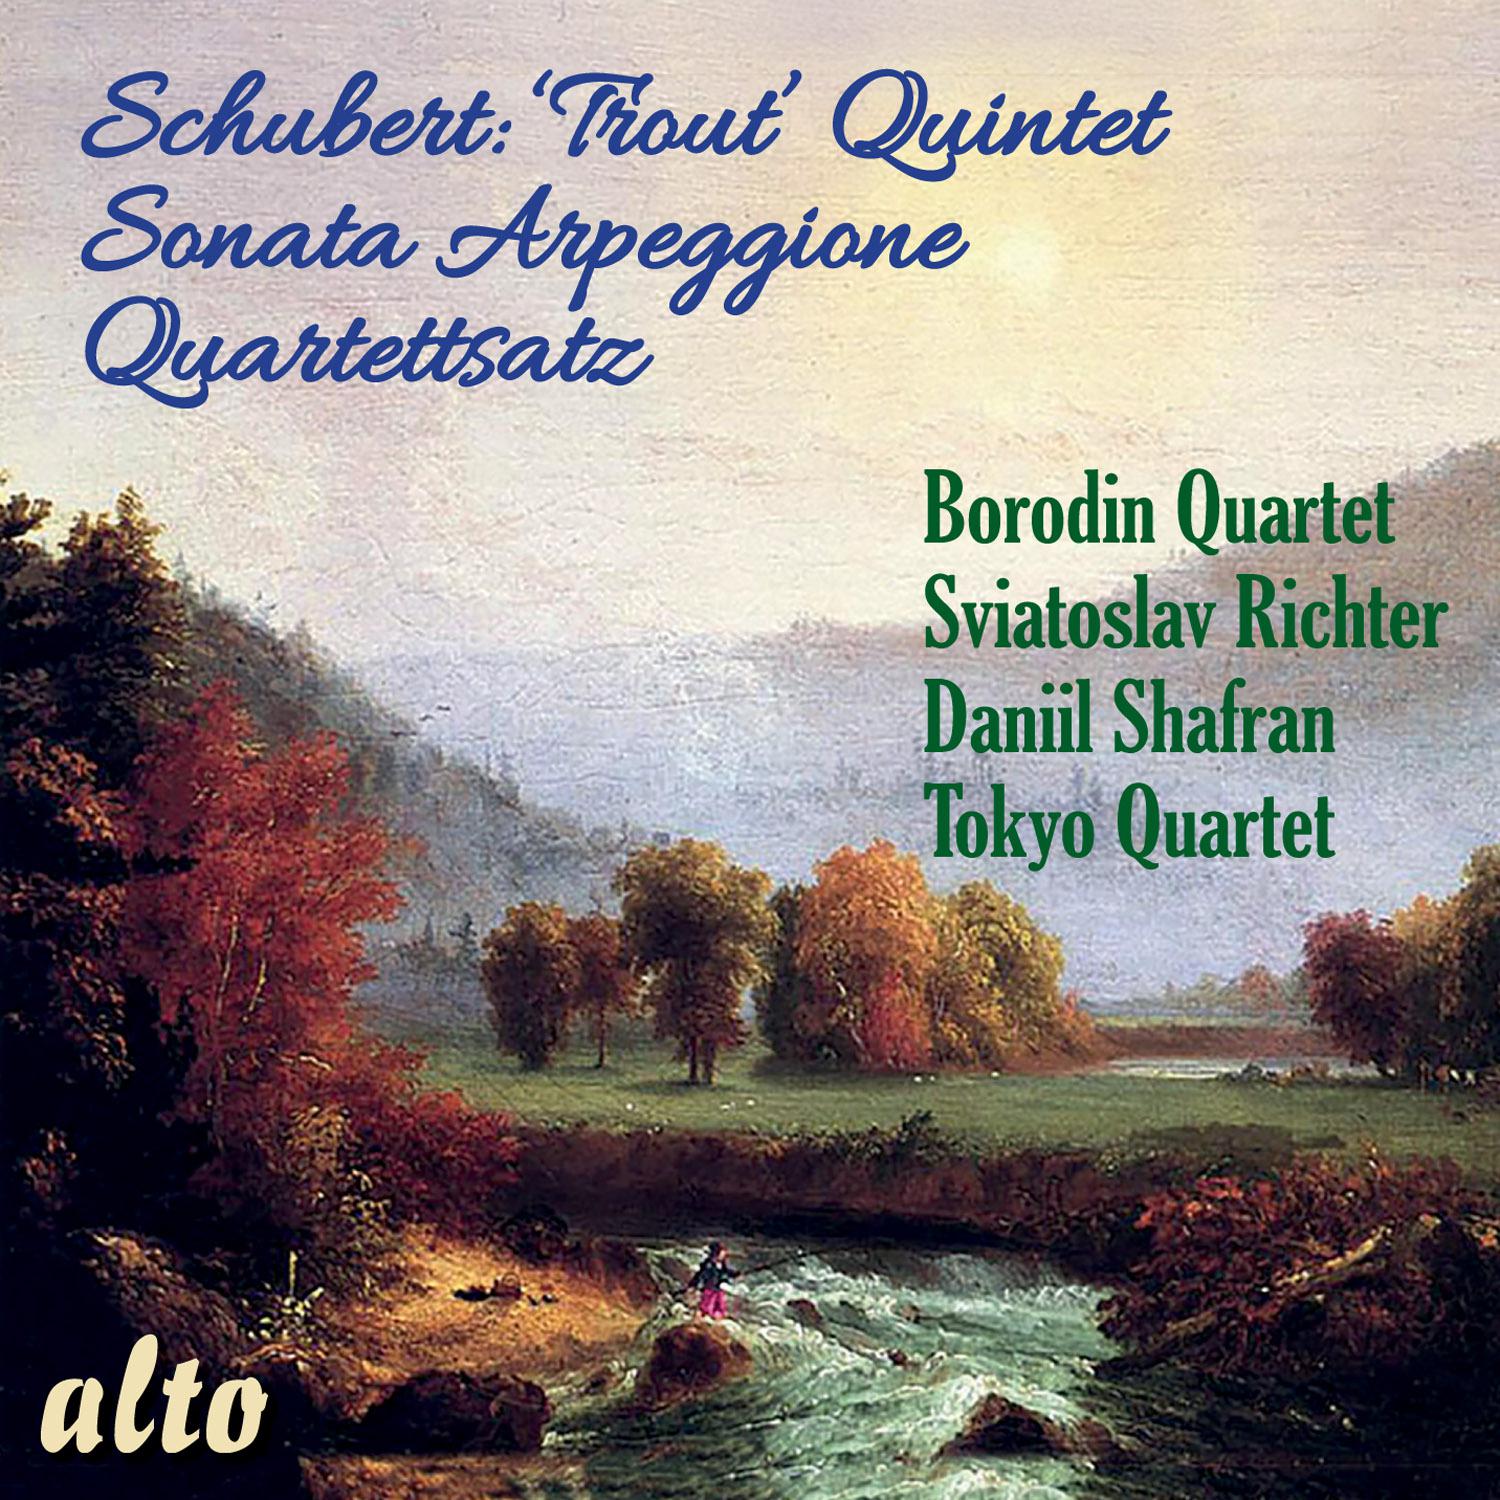 Daniil Shafran - Sonata Arpeggione in A minor, D. 821